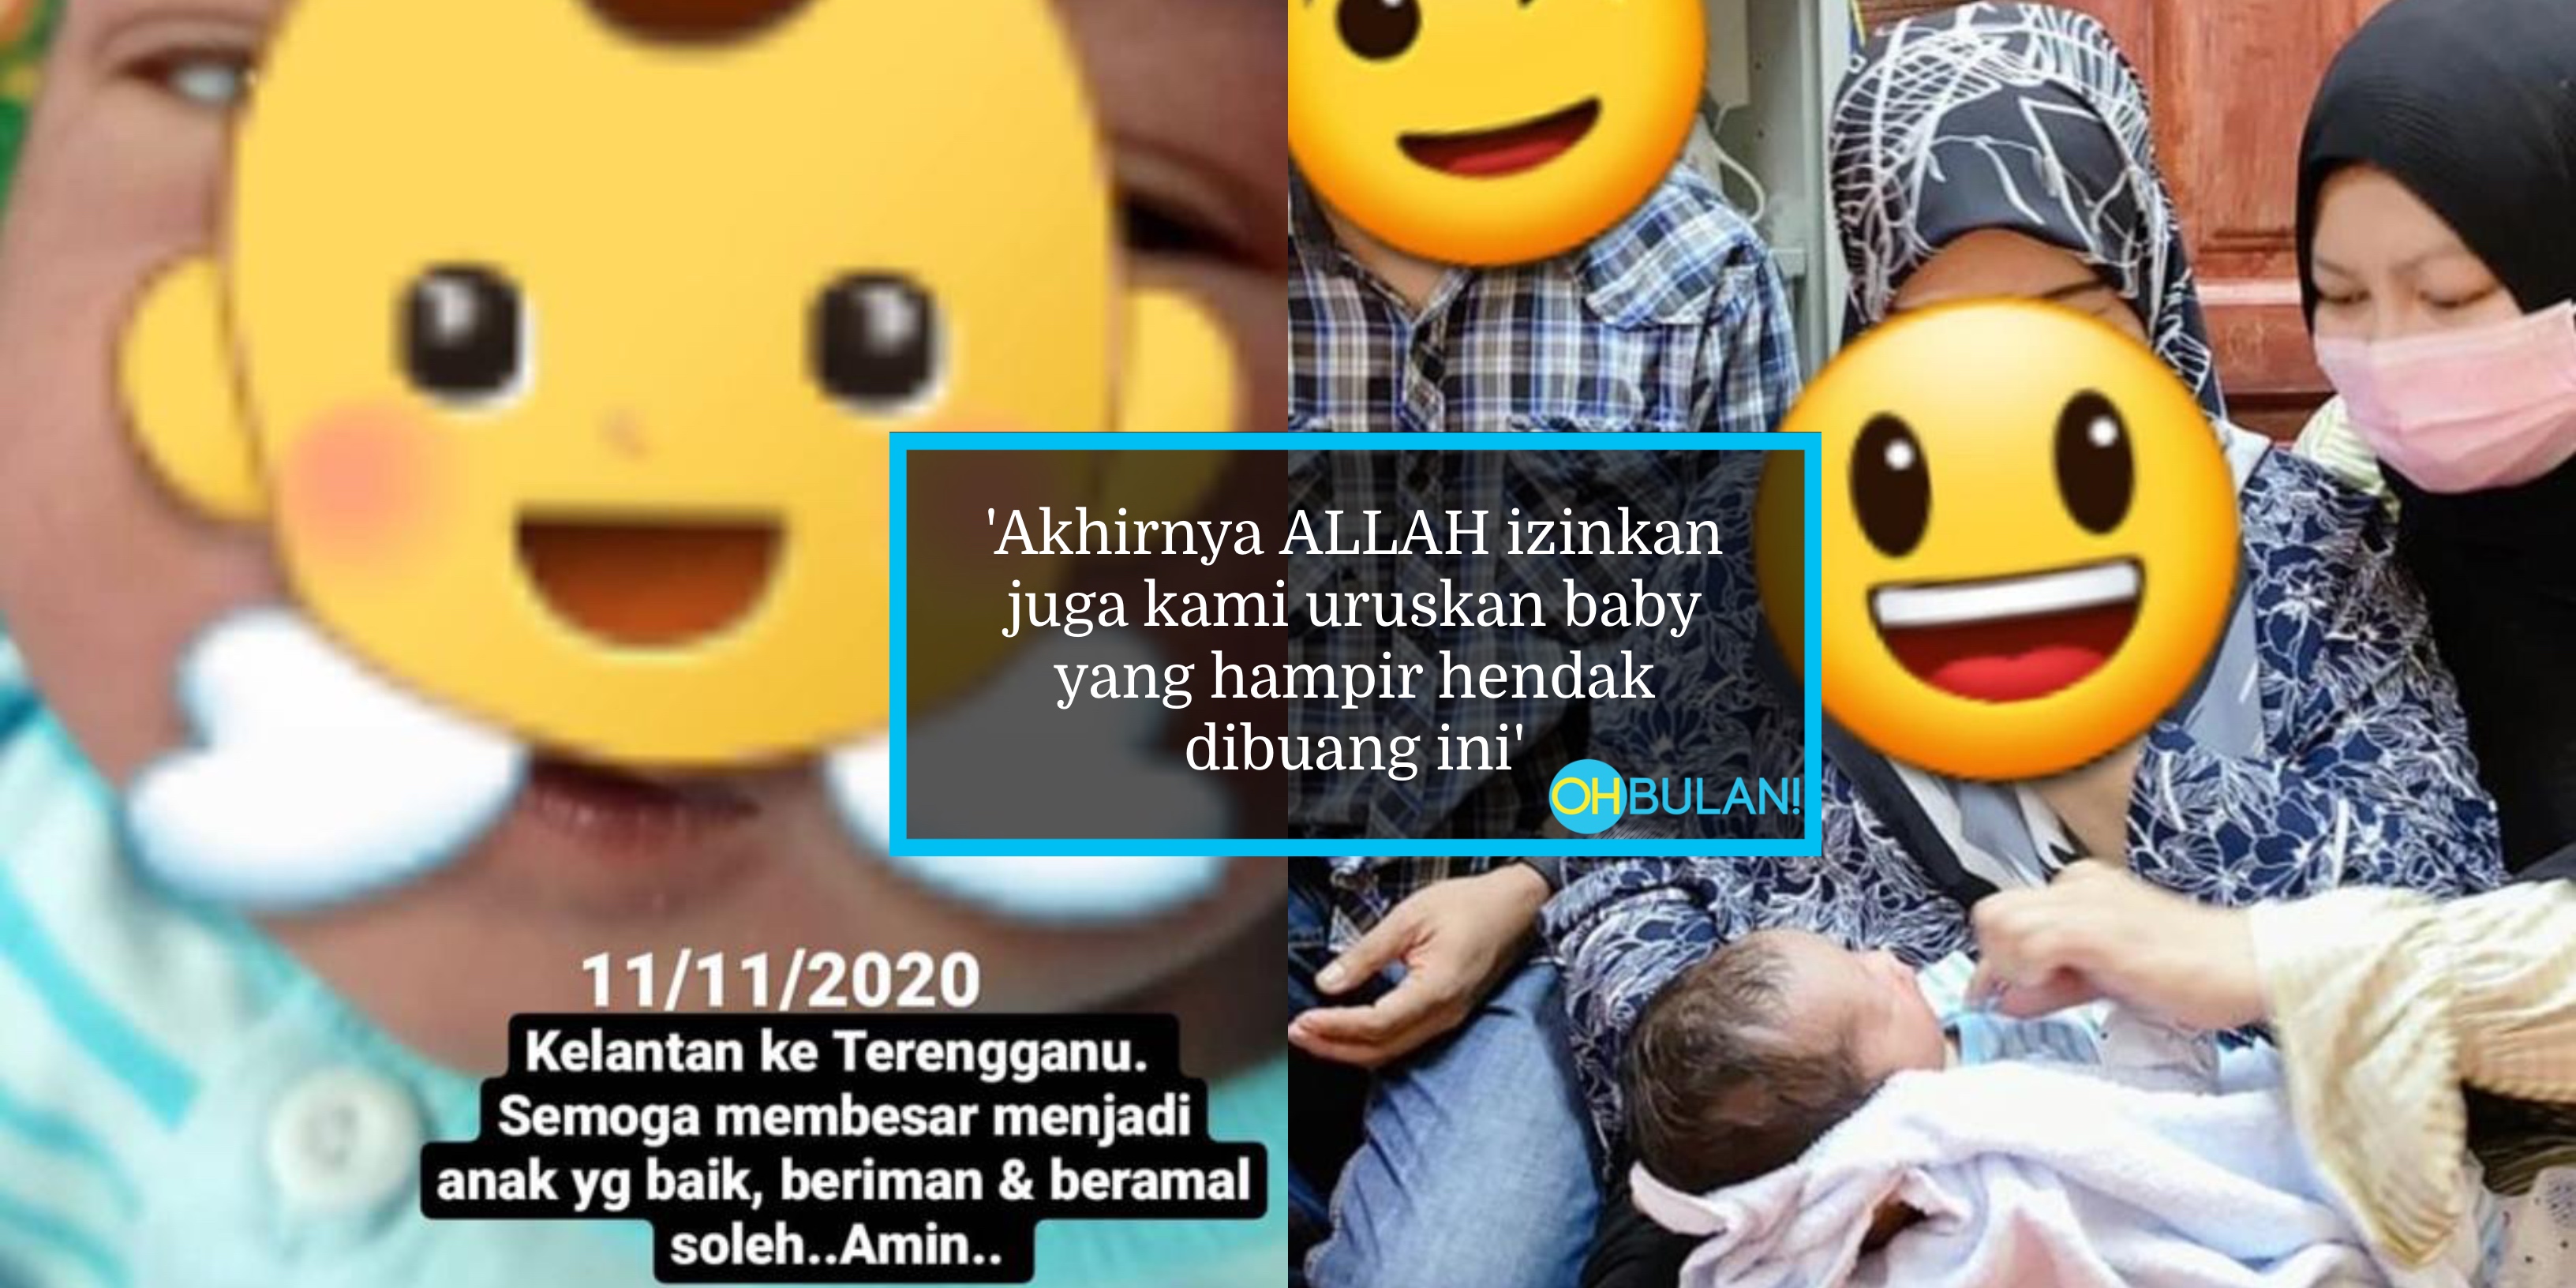 Dari Kelantan Ke Terengganu Semata-Mata Selamatkan Bayi Hampir Dibuang, Tindakan Abby Abadi Terima Pujian